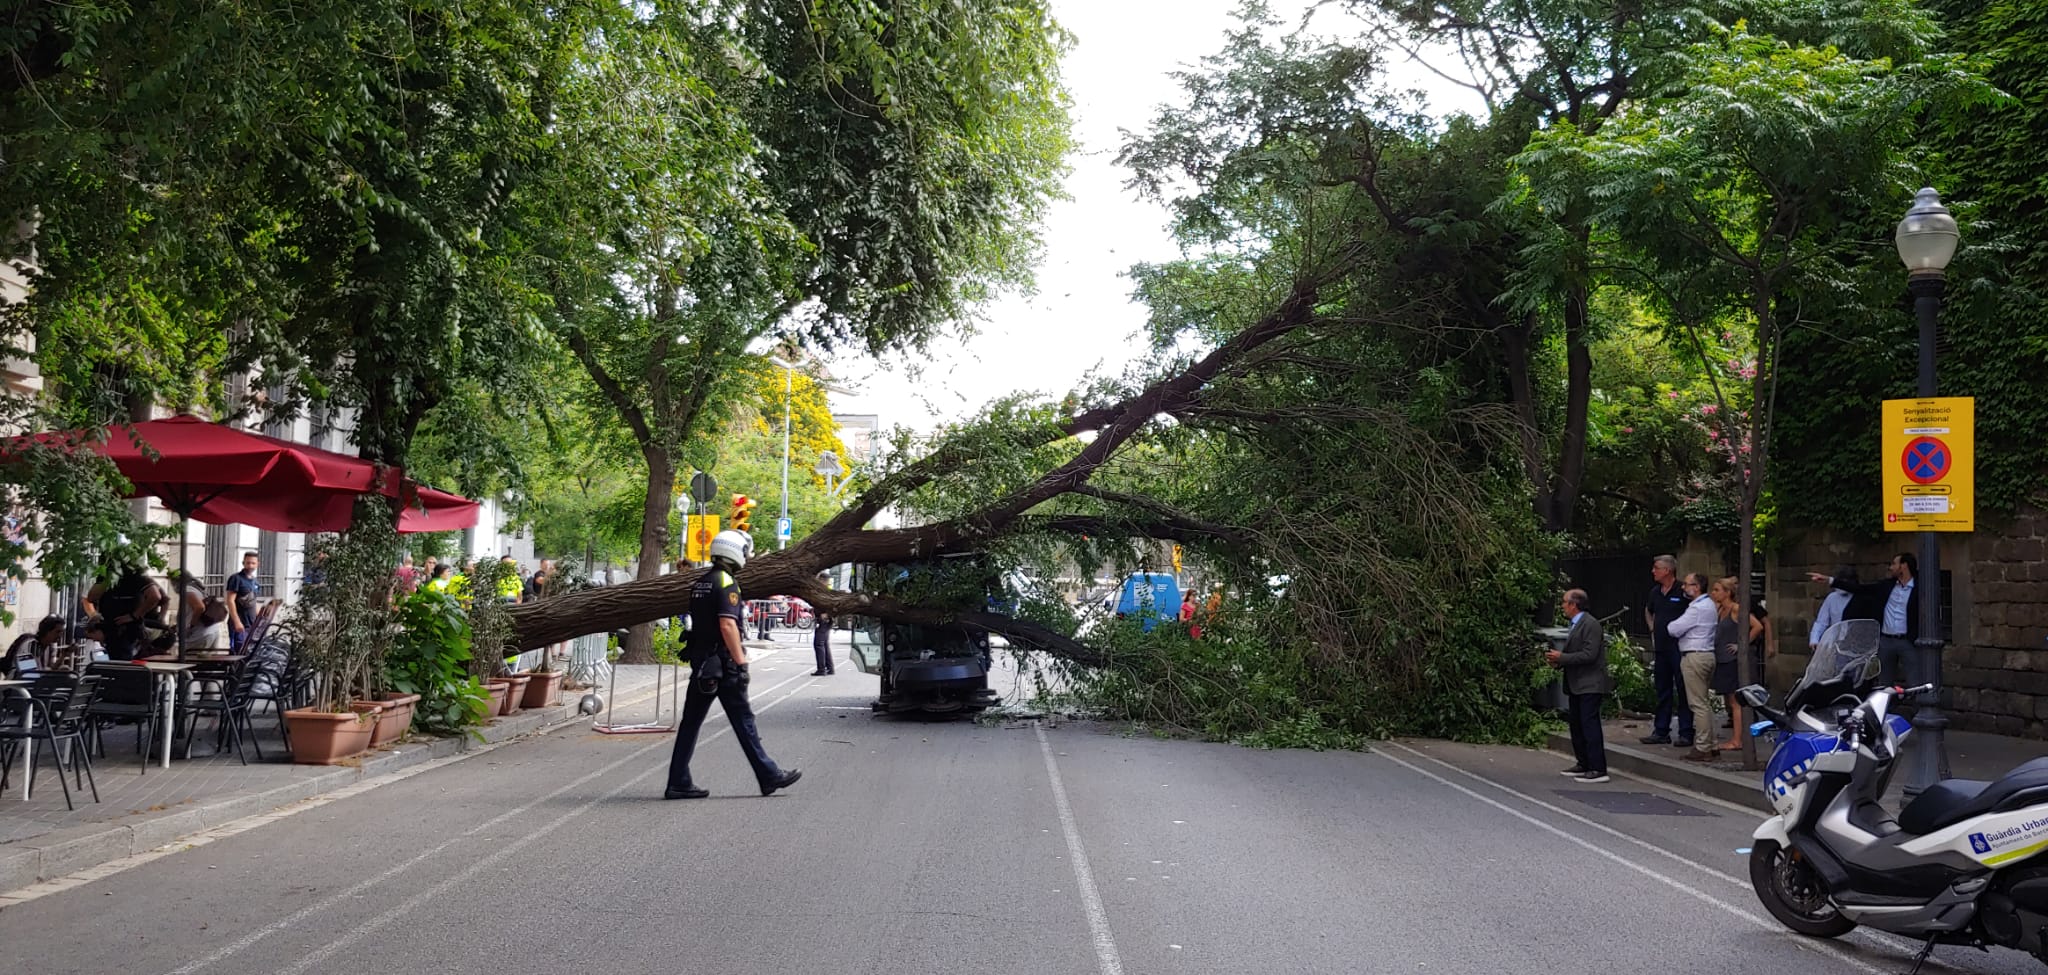 Vuelve a caer un árbol en Barcelona: un hecho que se está convirtiendo en habitual